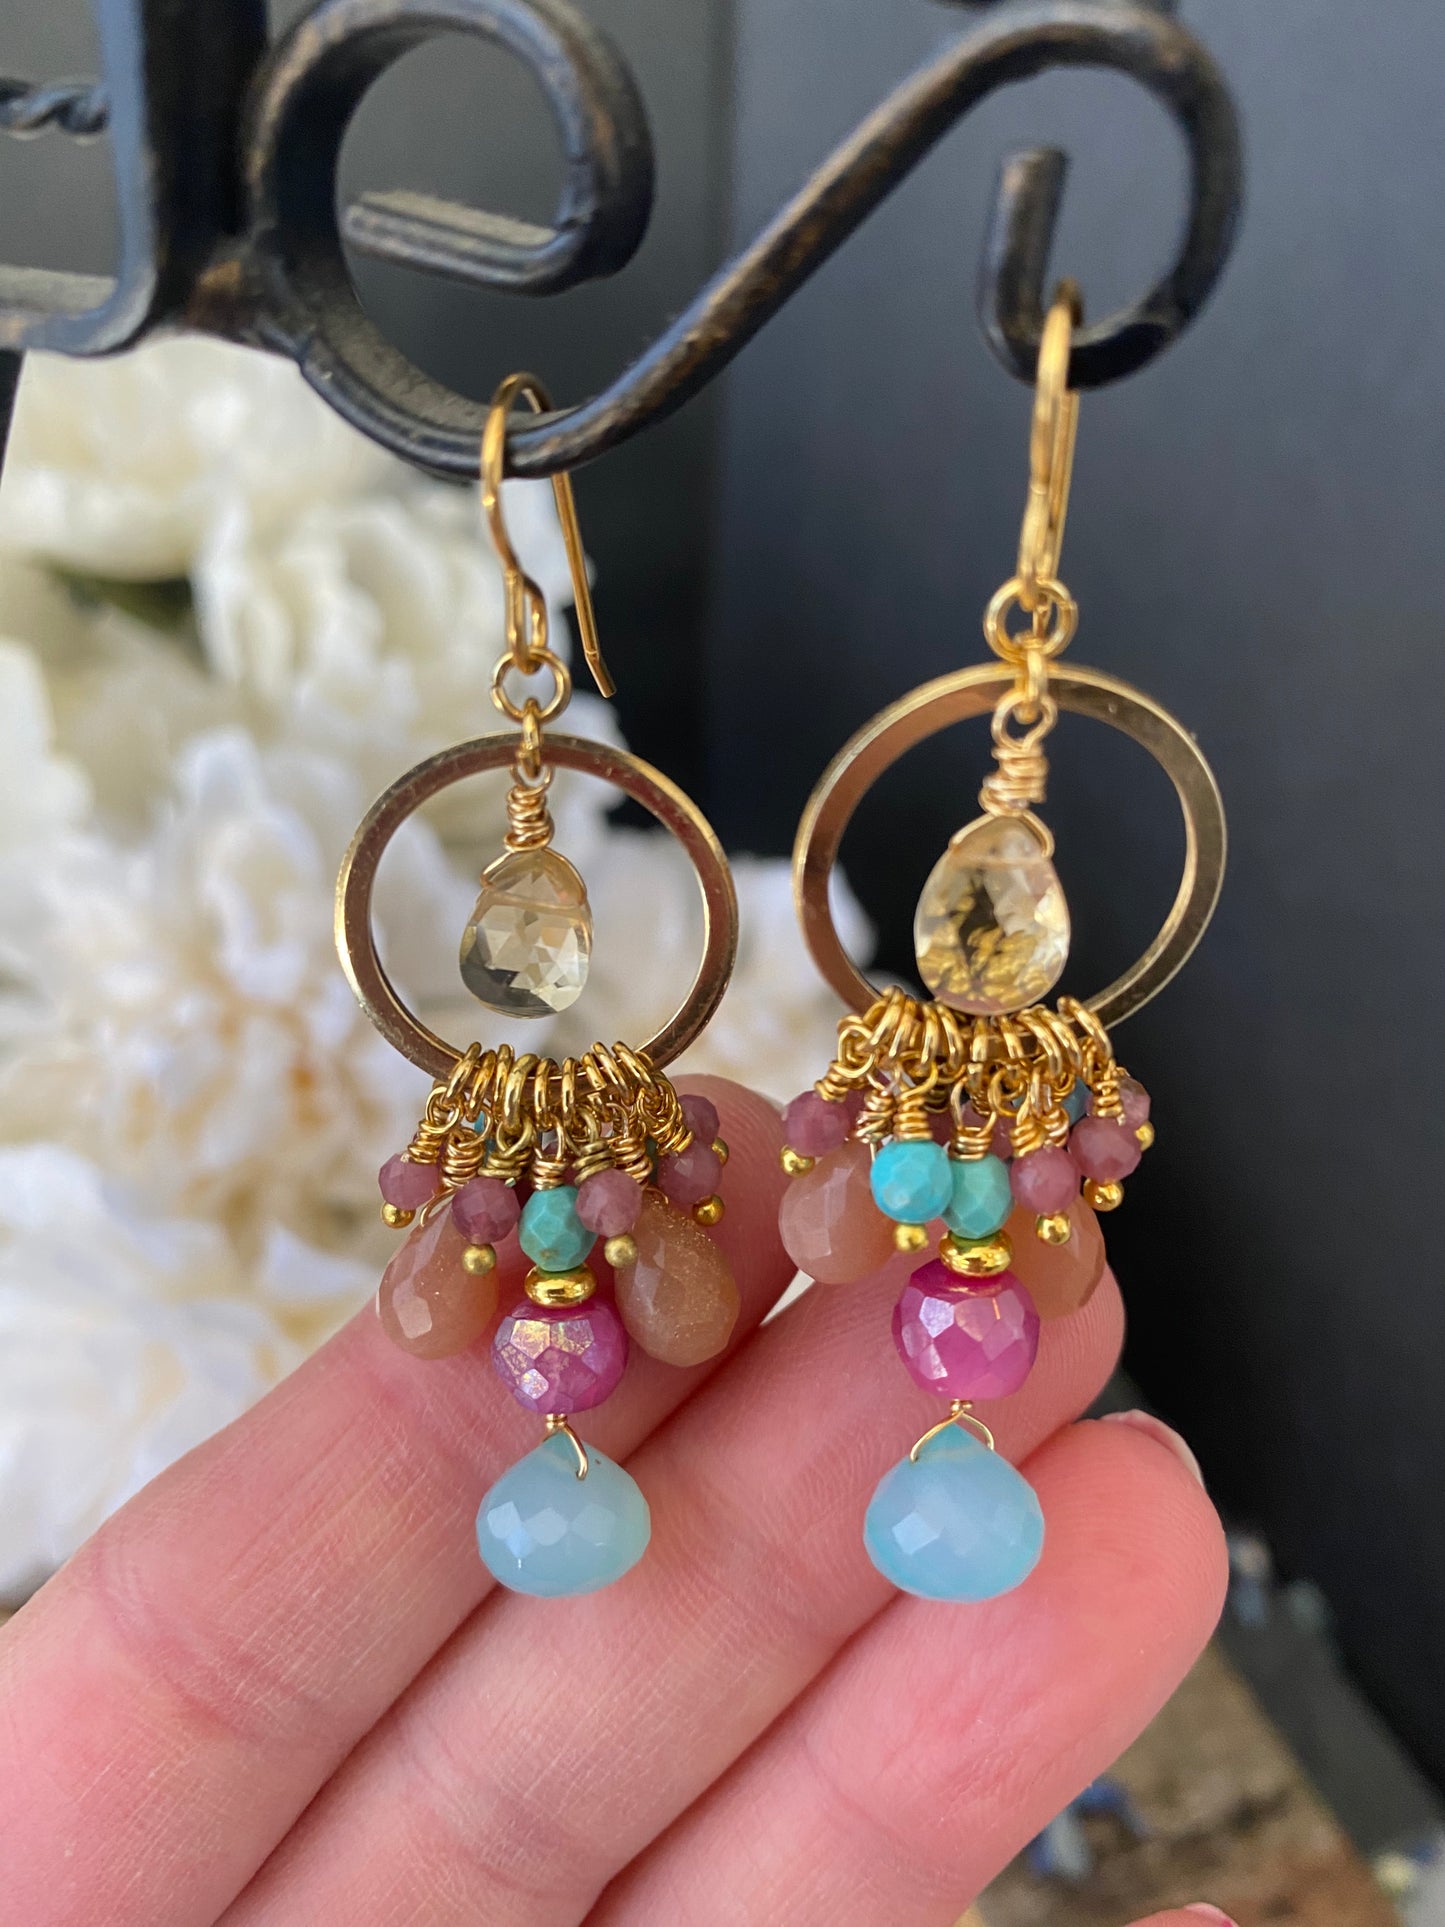 Pink, peach, blue mixed gemstones, gold metal earrings